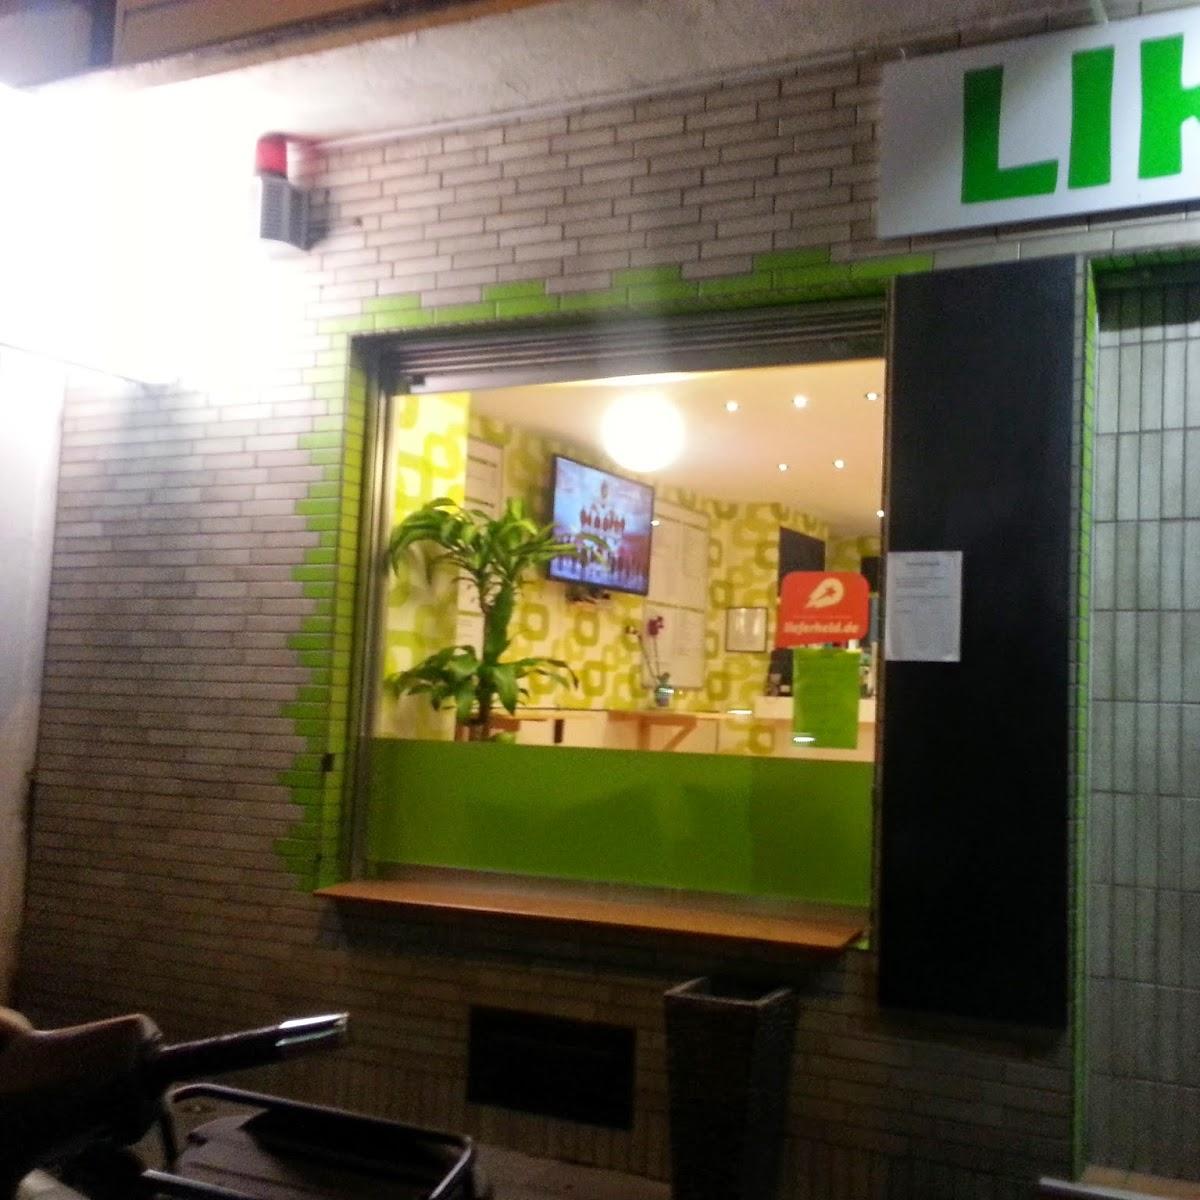 Restaurant "Lika" in Köln